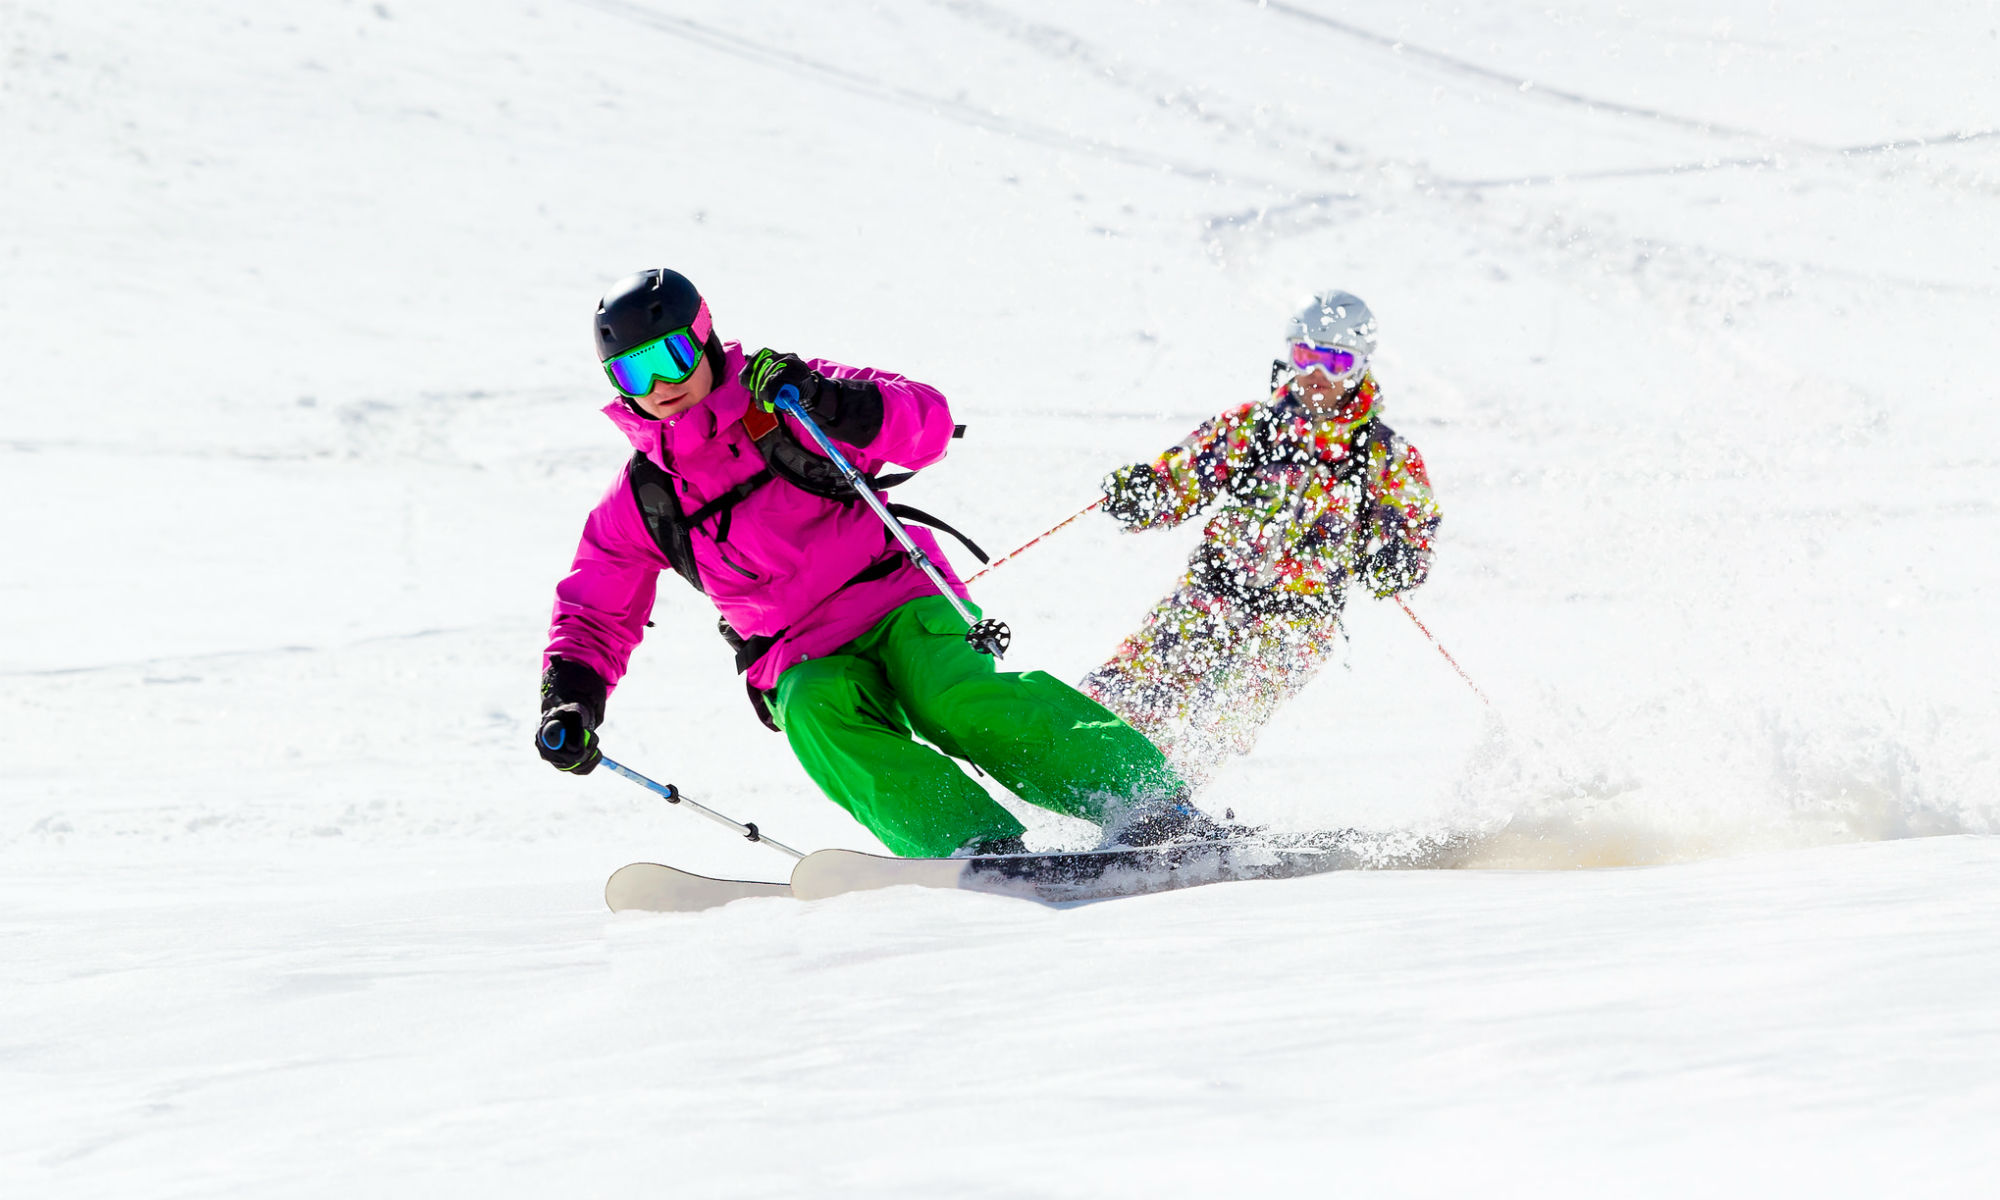 Basic Equipment for Freeride Skiing